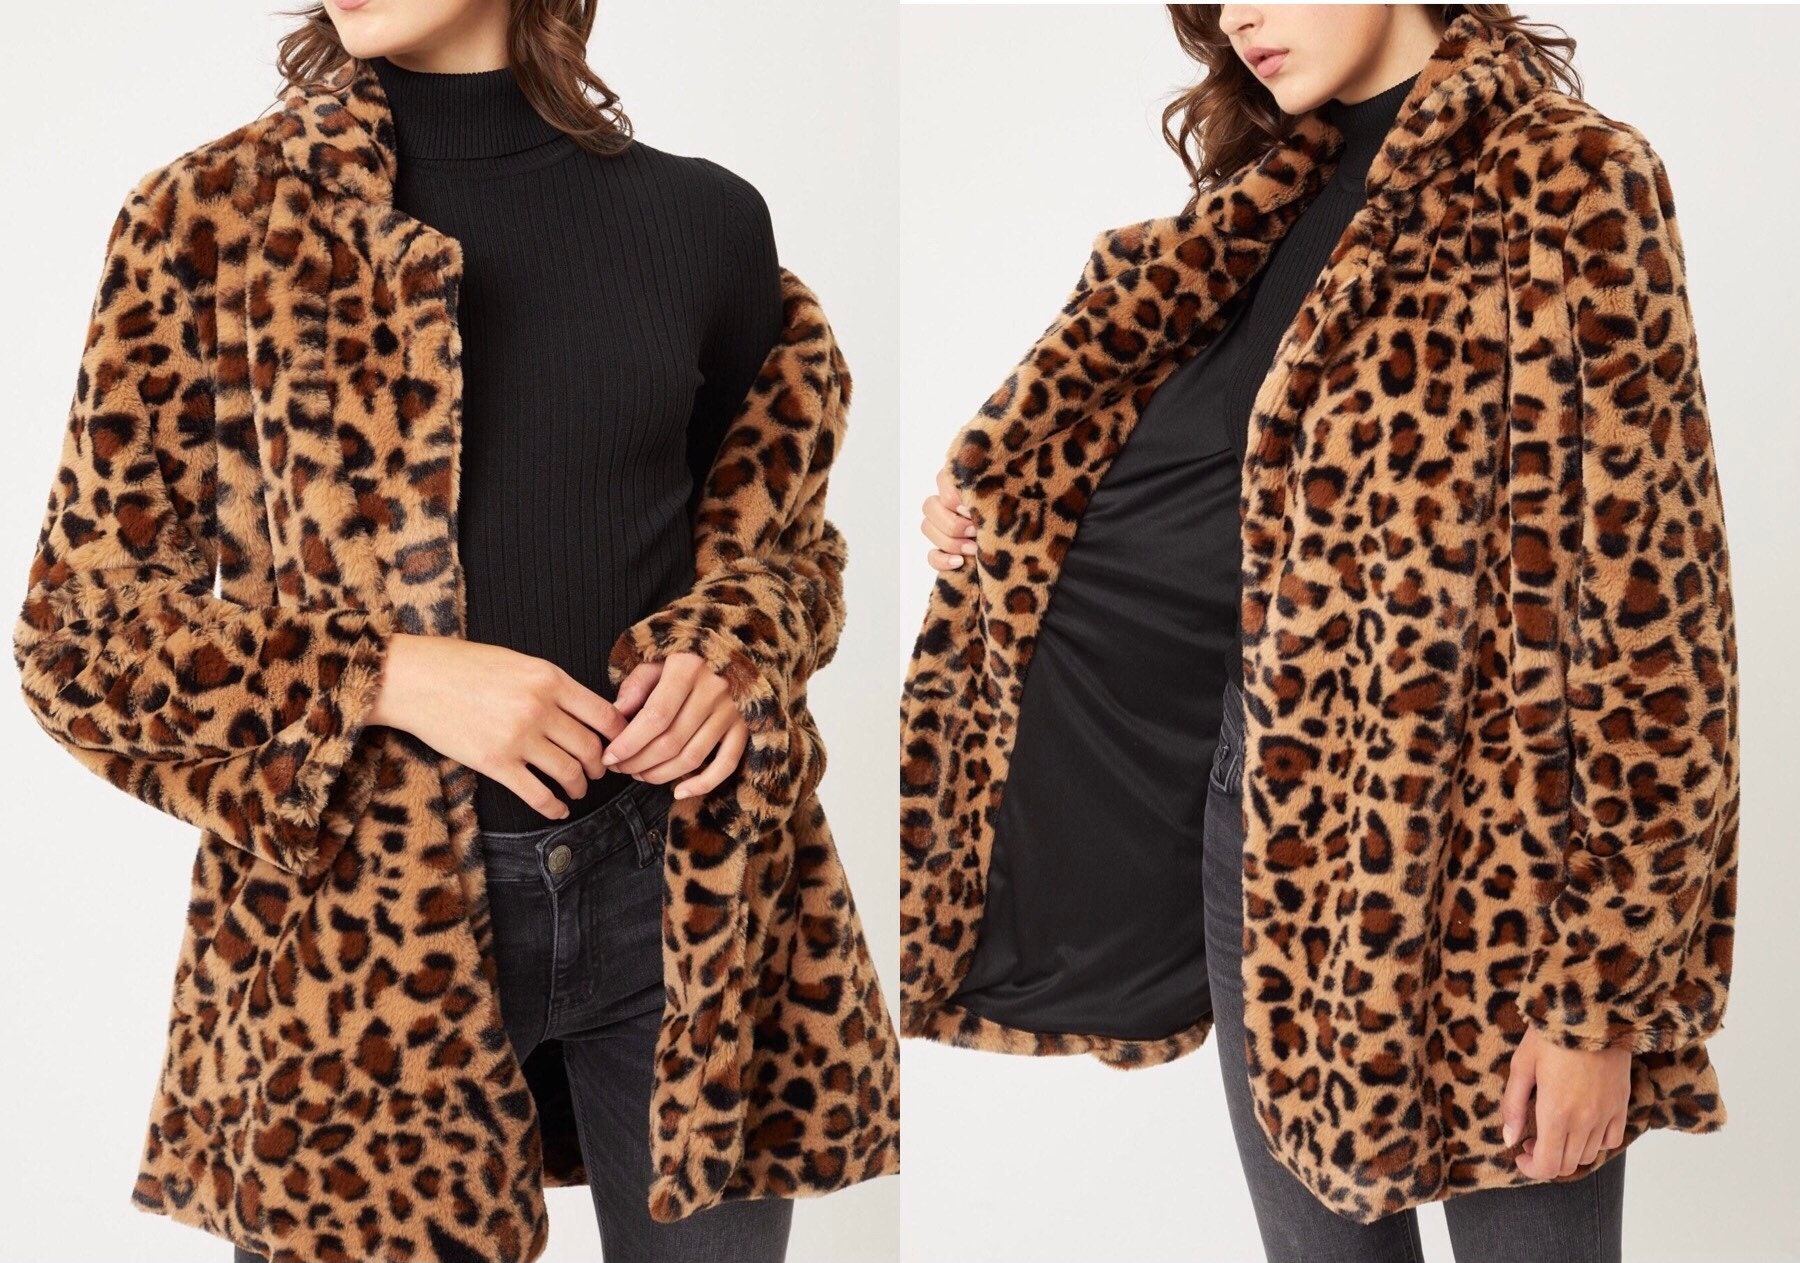 Pandaie Womens .. Jacket Coat,Outwear Fashion Women Warm Vintage Animal Leopard Print Faux Fur Jacket Coat Outwear 